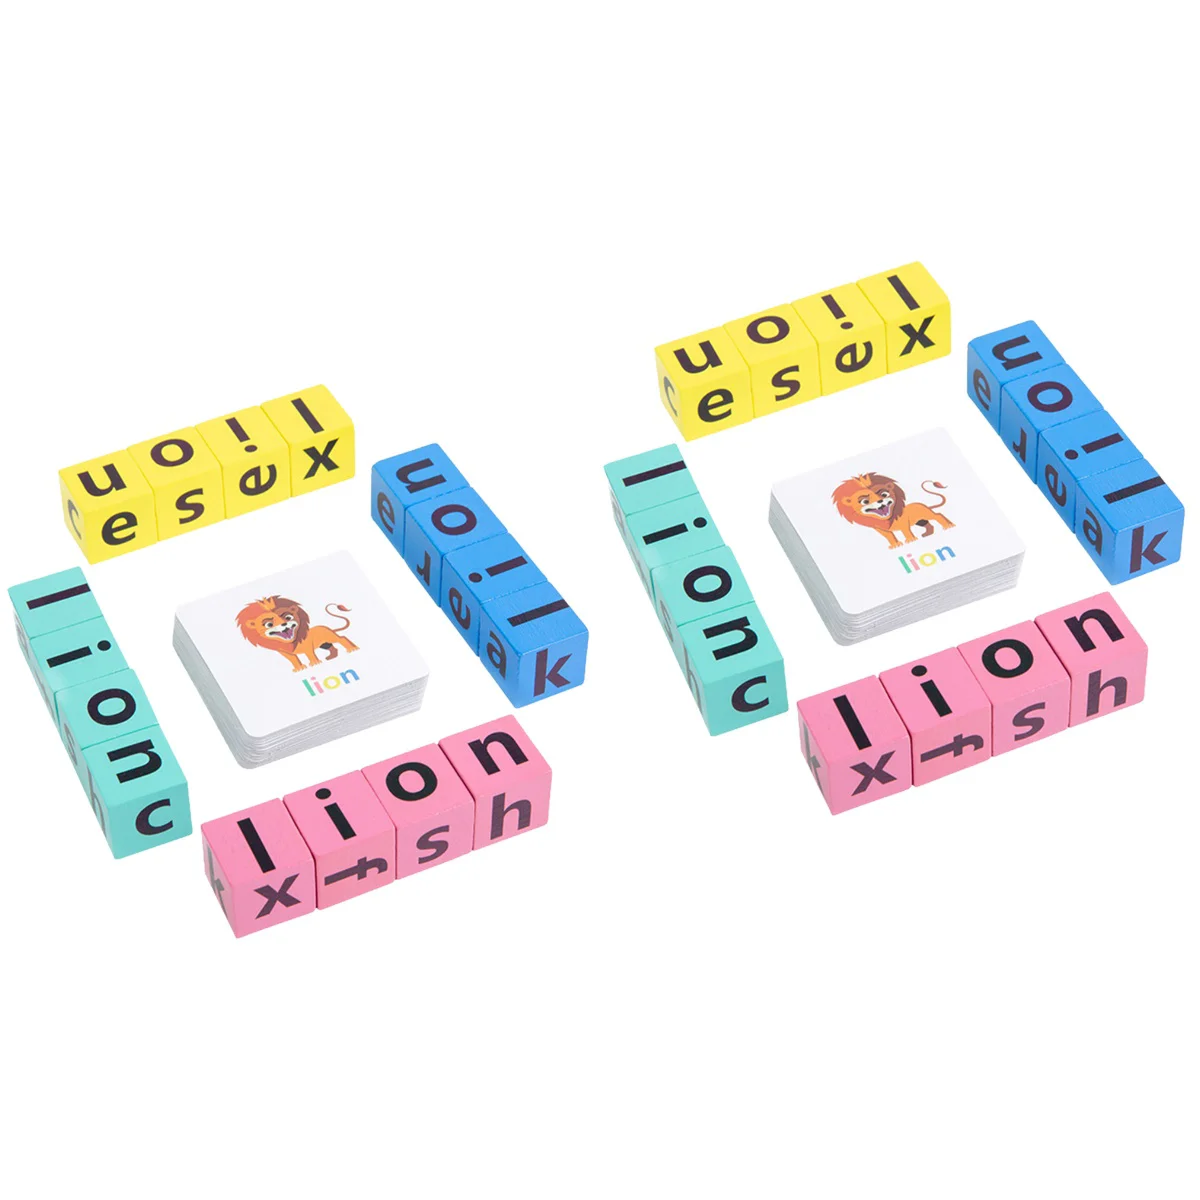 

Английский алфавит познавательная игрушка образовательные буквы карты детские правописанные игры Обучающие головоломки слова малыши деревянные игрушки